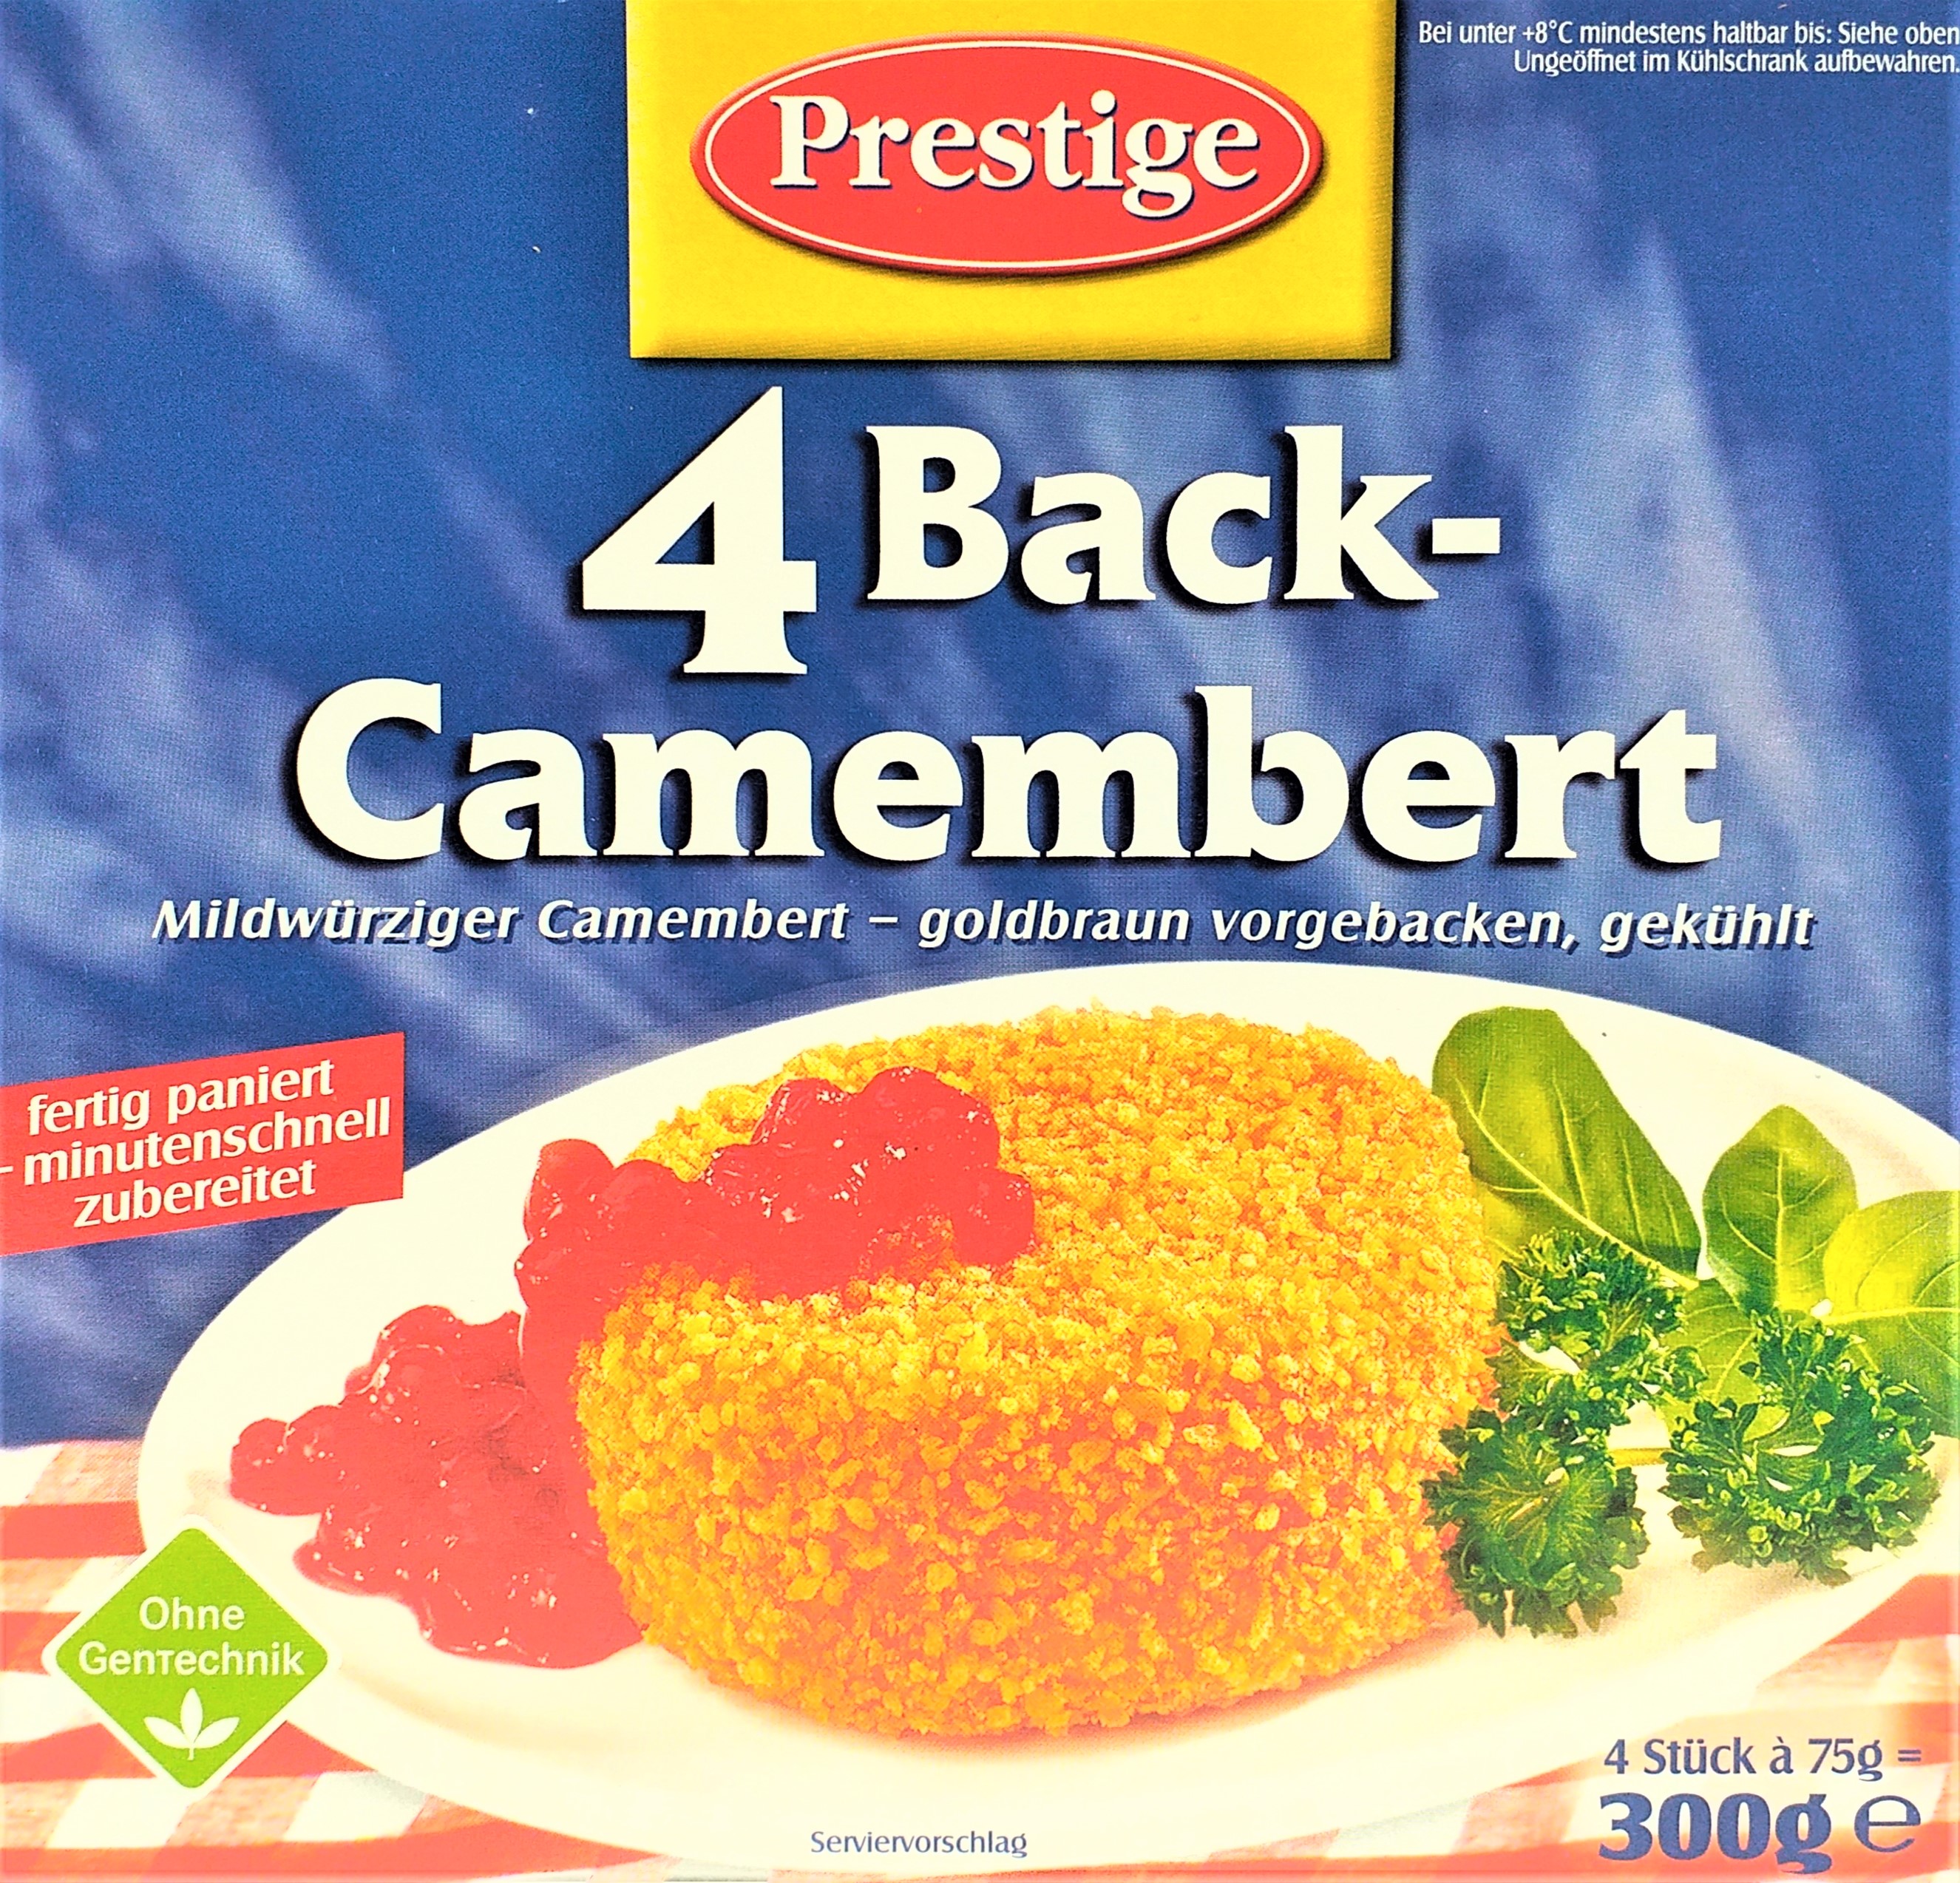 Prestige Back-Camembert 300g